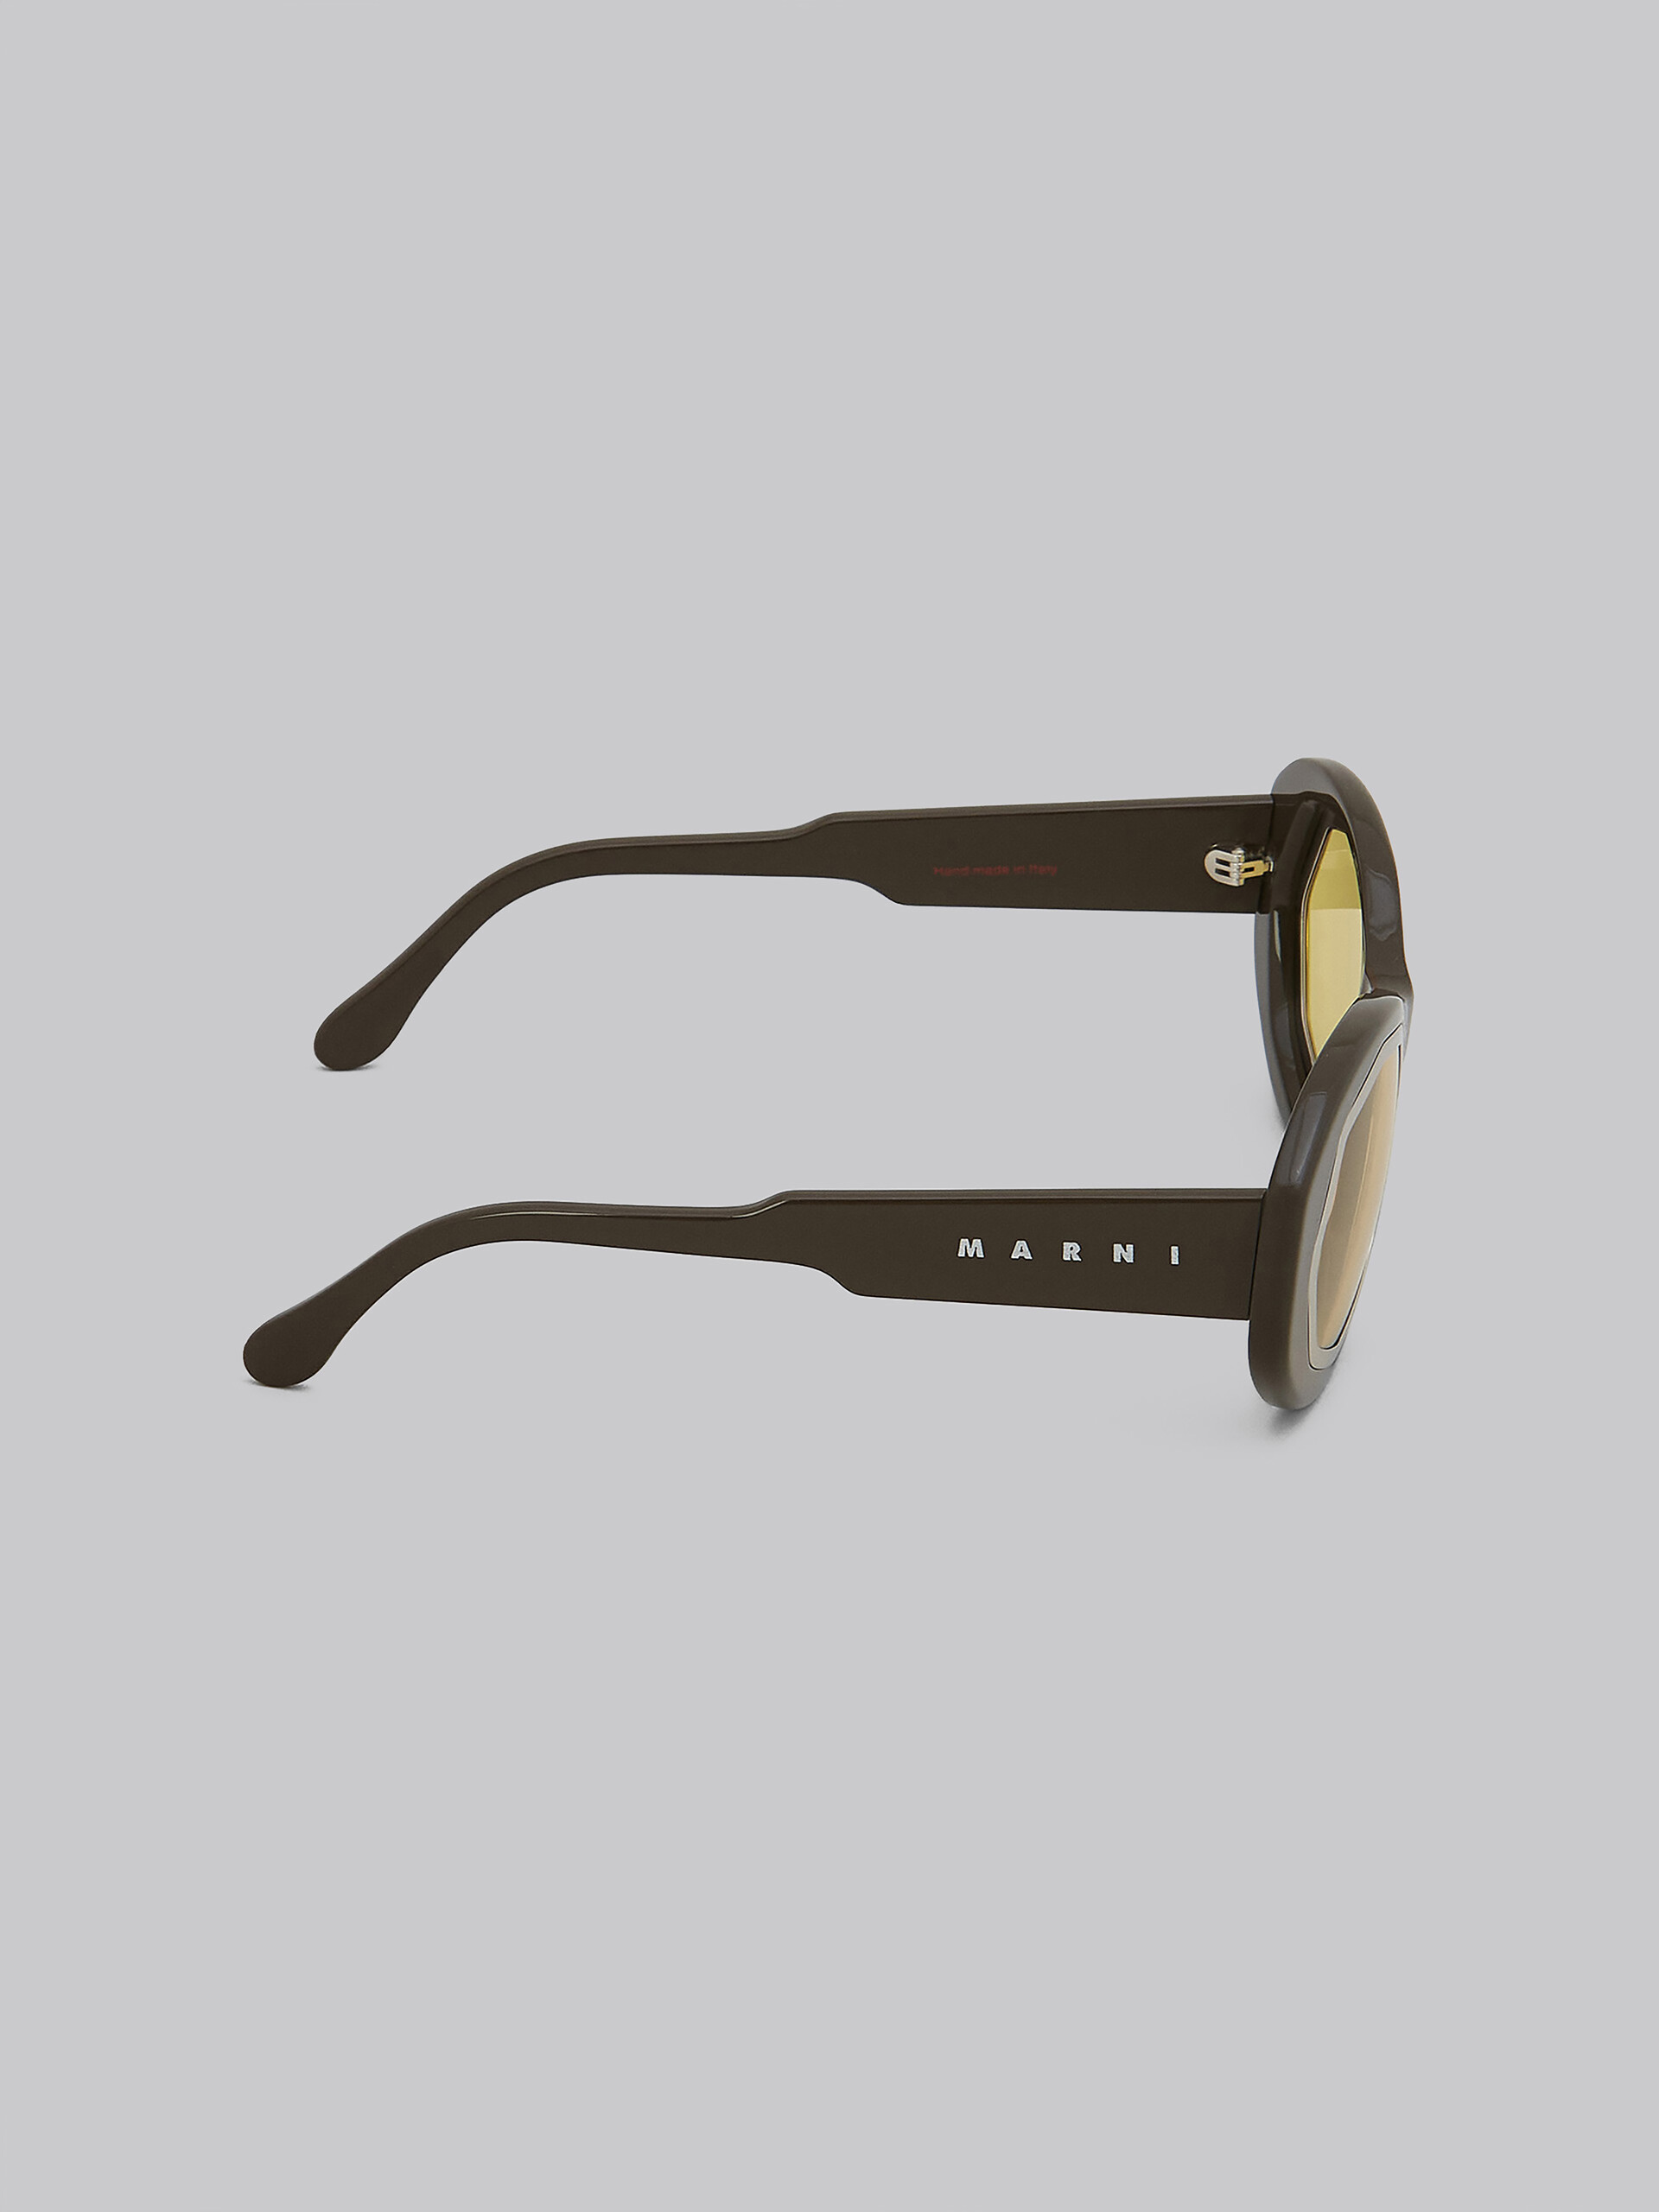 Black MOUNT BRUMO acetate sunglasses - Optical - Image 3